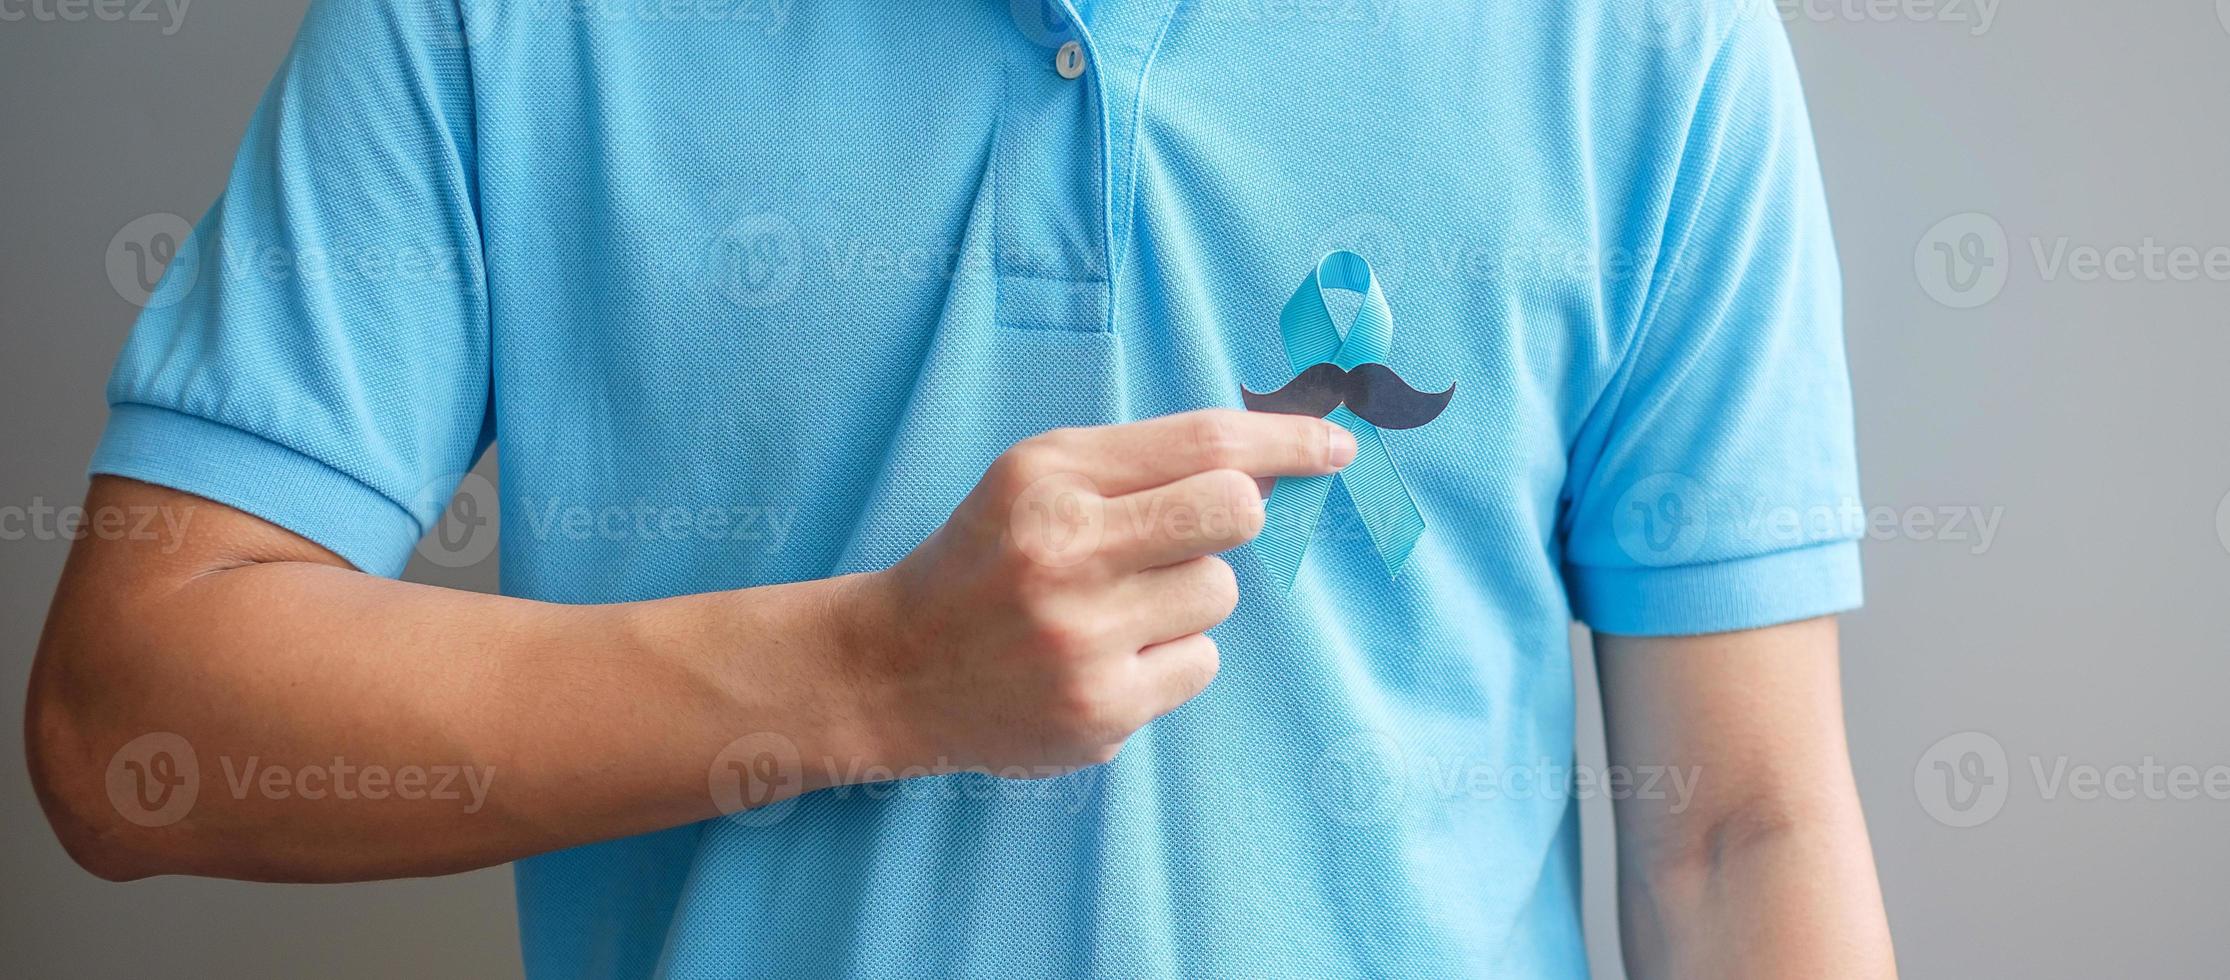 novembre mese di sensibilizzazione sul cancro alla prostata, uomo che tiene un nastro blu con i baffi per sostenere le persone che vivono e le malattie. concetto di salute, uomini internazionali, padre e giornata mondiale del cancro foto